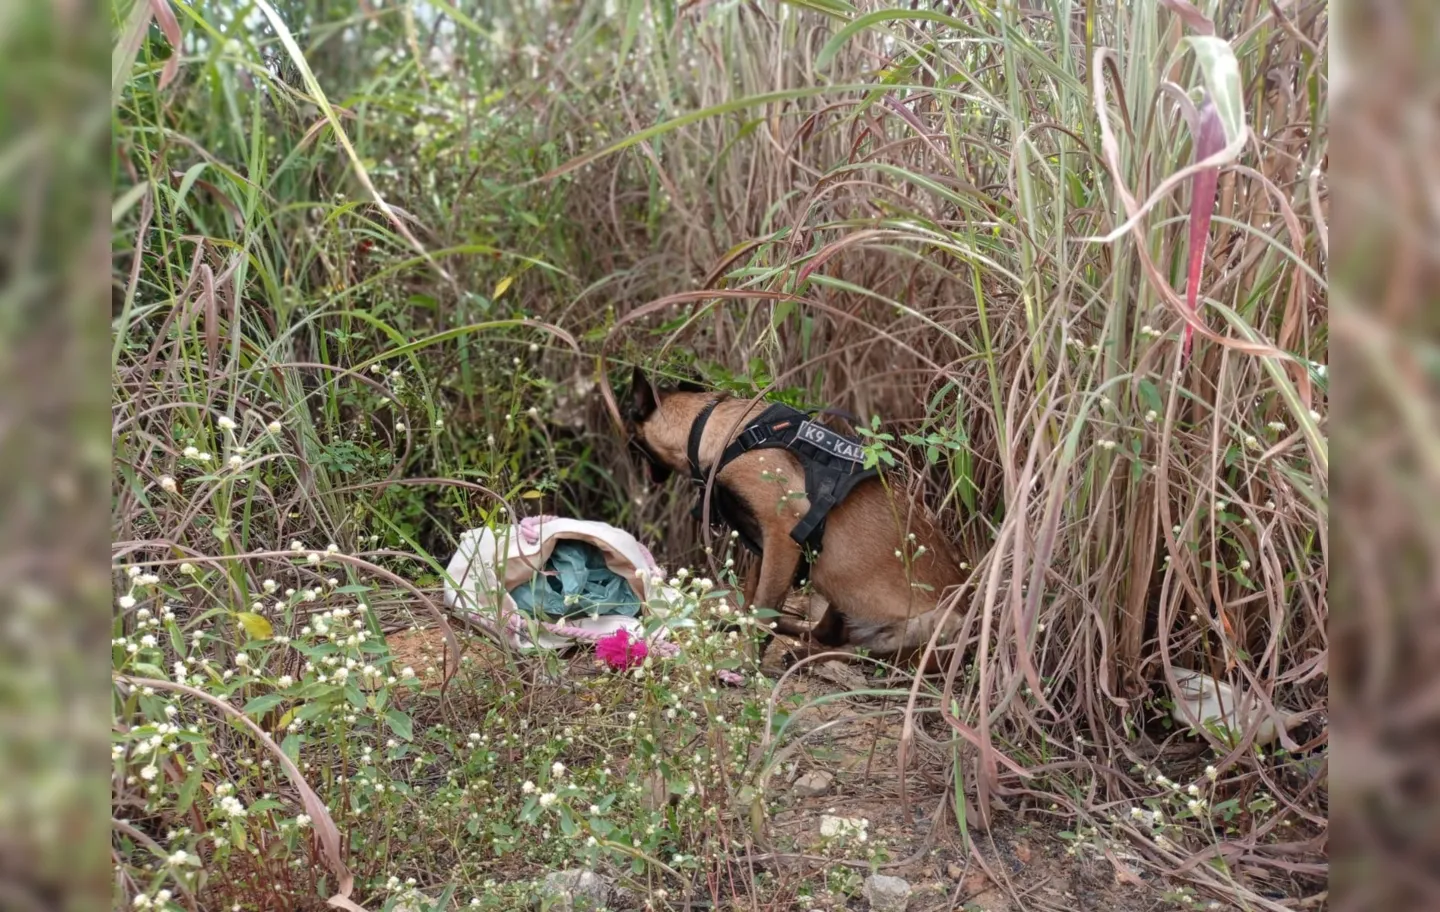 Cão farejador K9 Kalil foi levado ao local e encontrou a bolsa arremessada com 4,5 quilos de cocaína